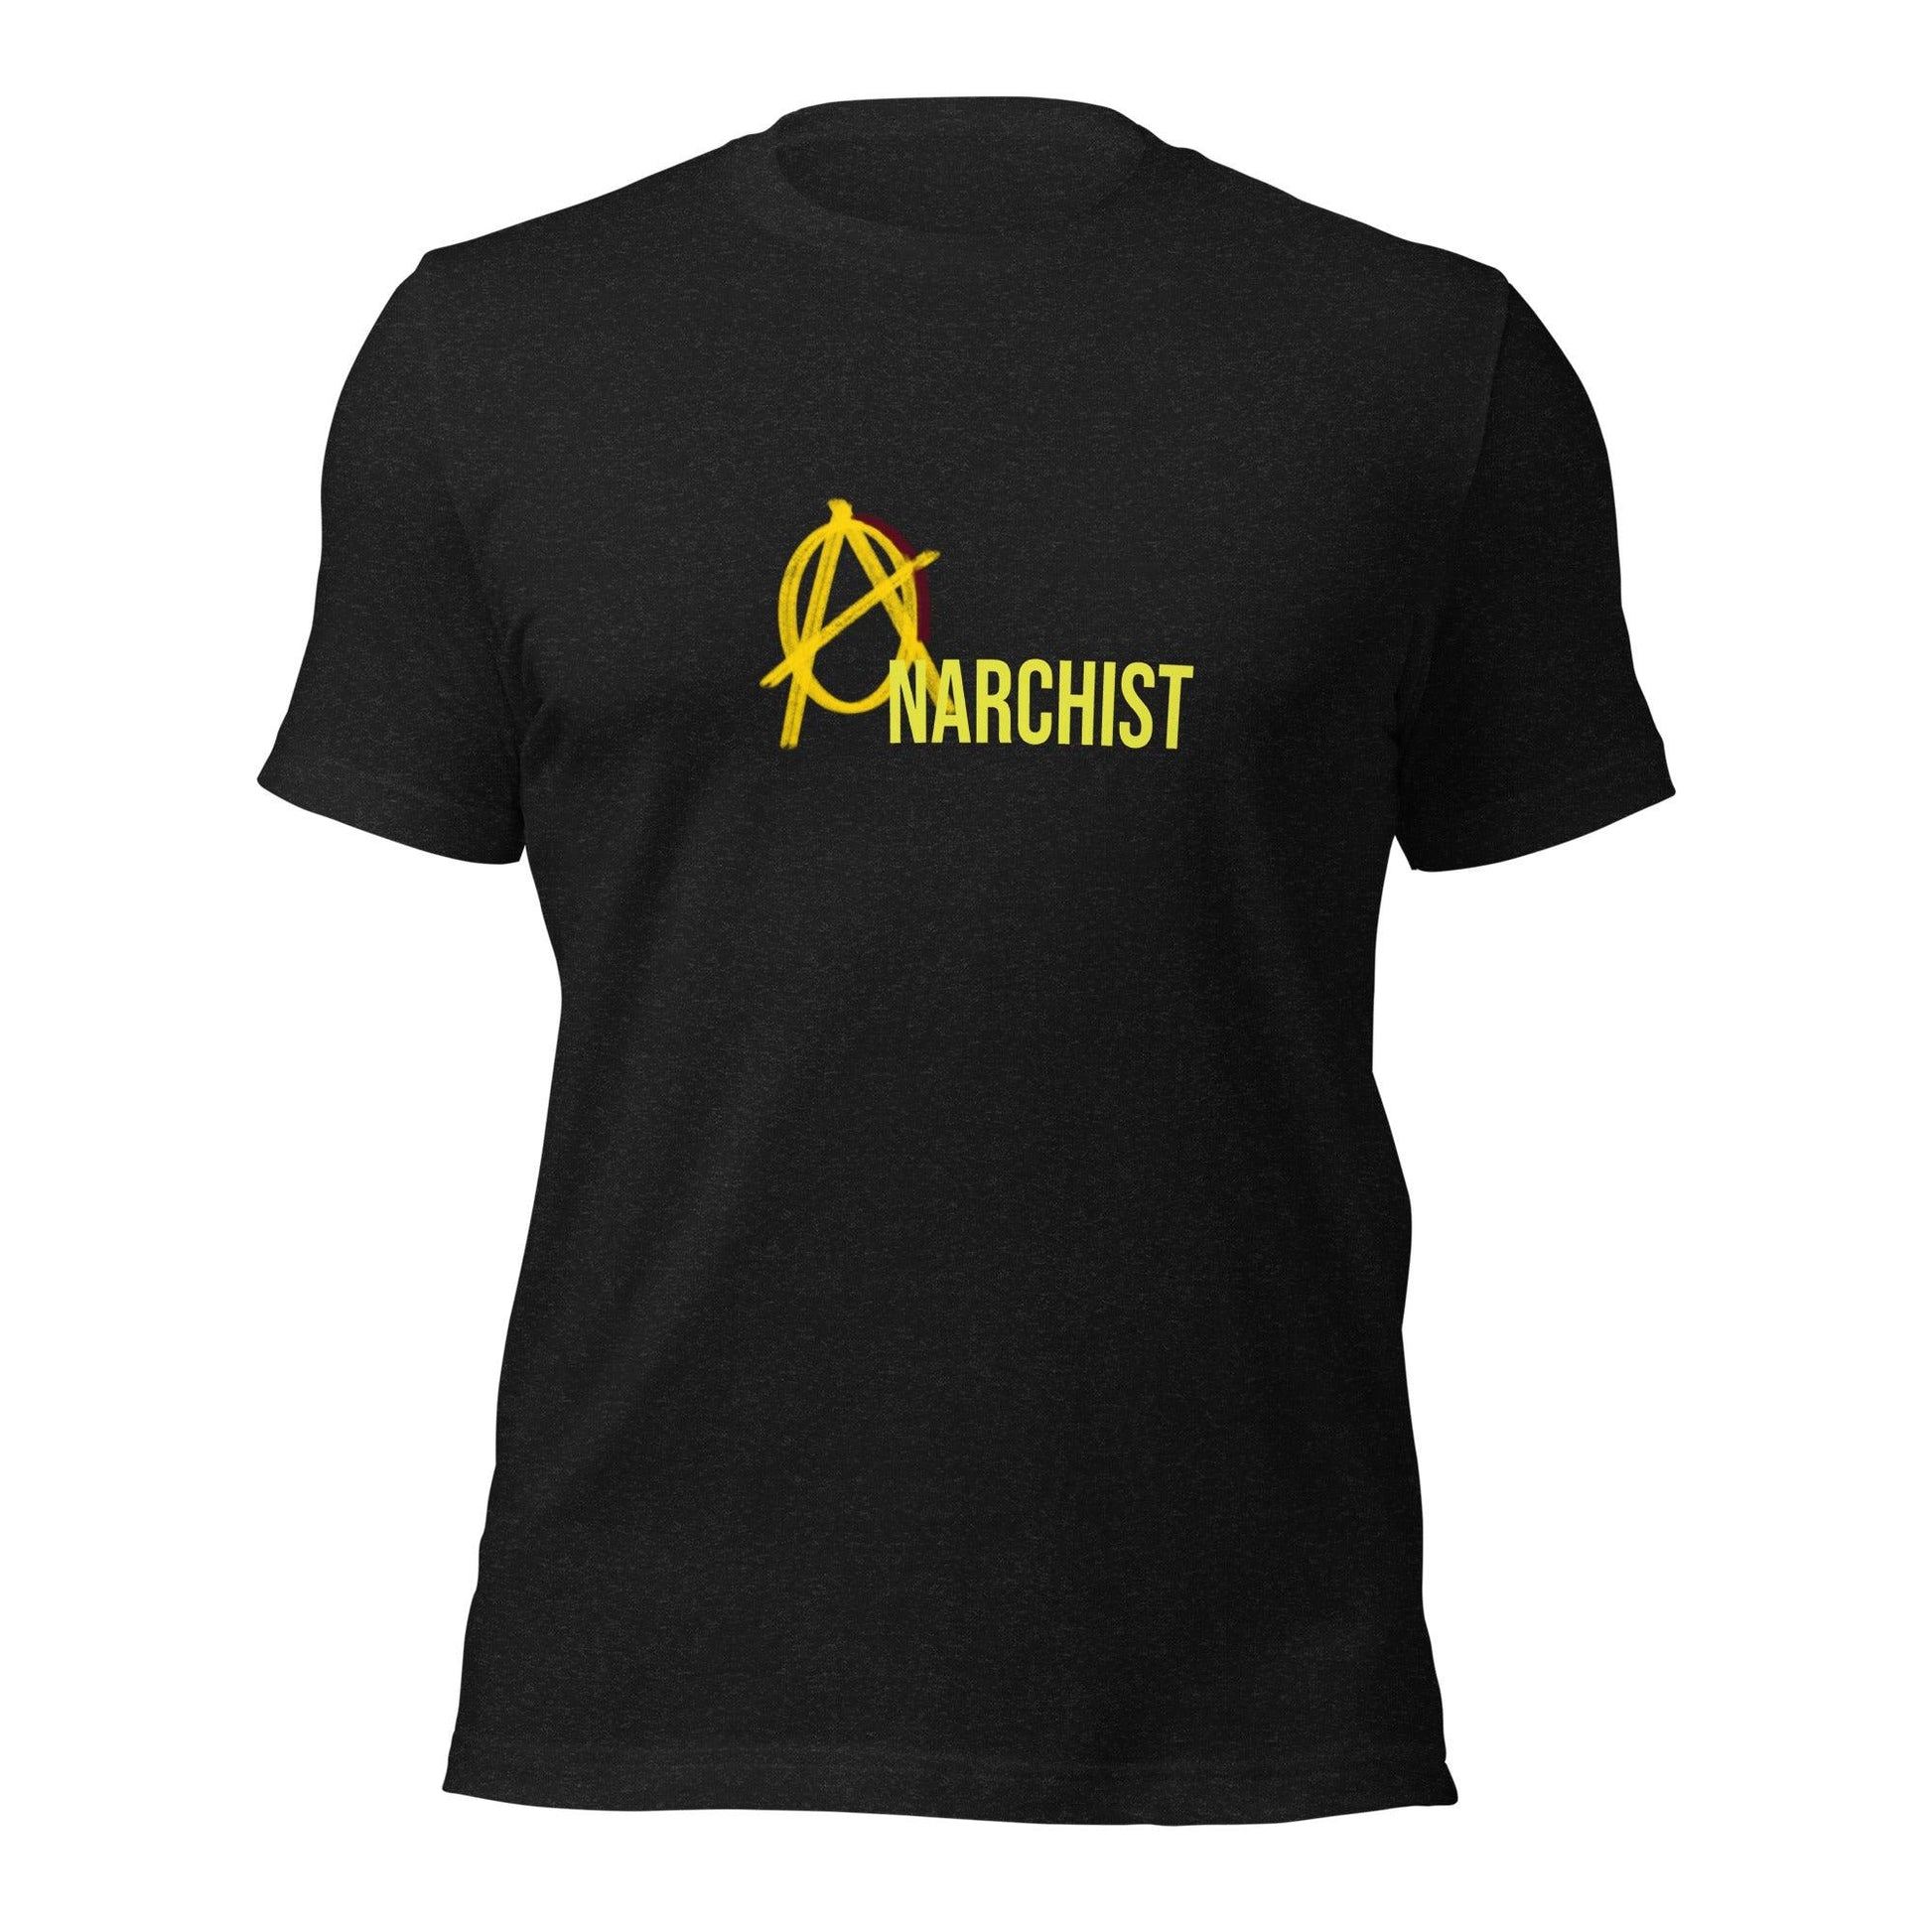 Anarchy Wear "Anarchist" Unisex t-shirt - AnarchyWear